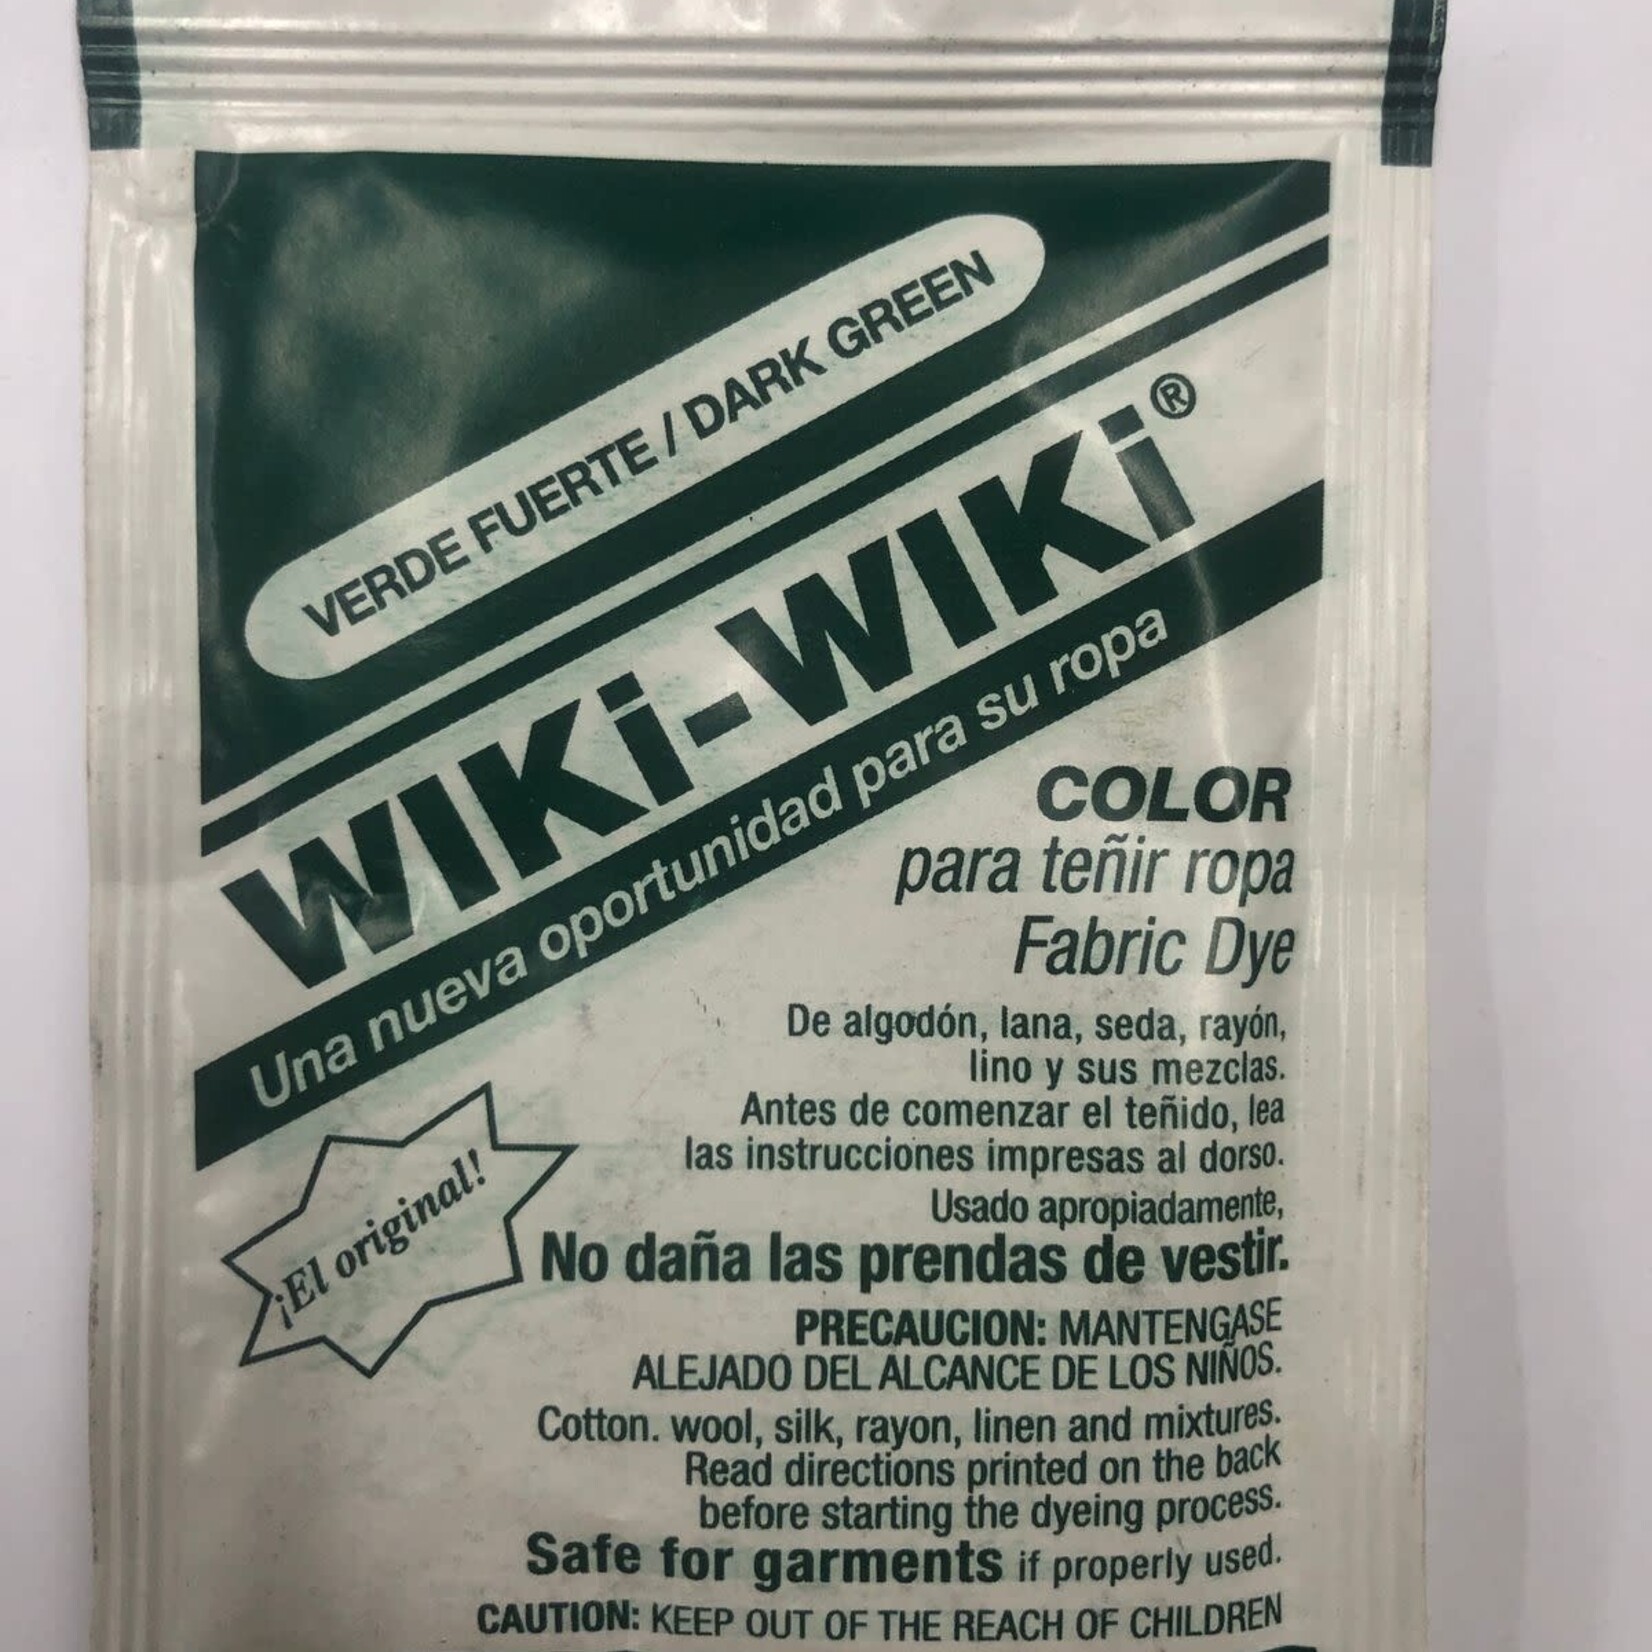 Wiki-Wiki Fabric Dye Dark Green(Verde Fuerte)